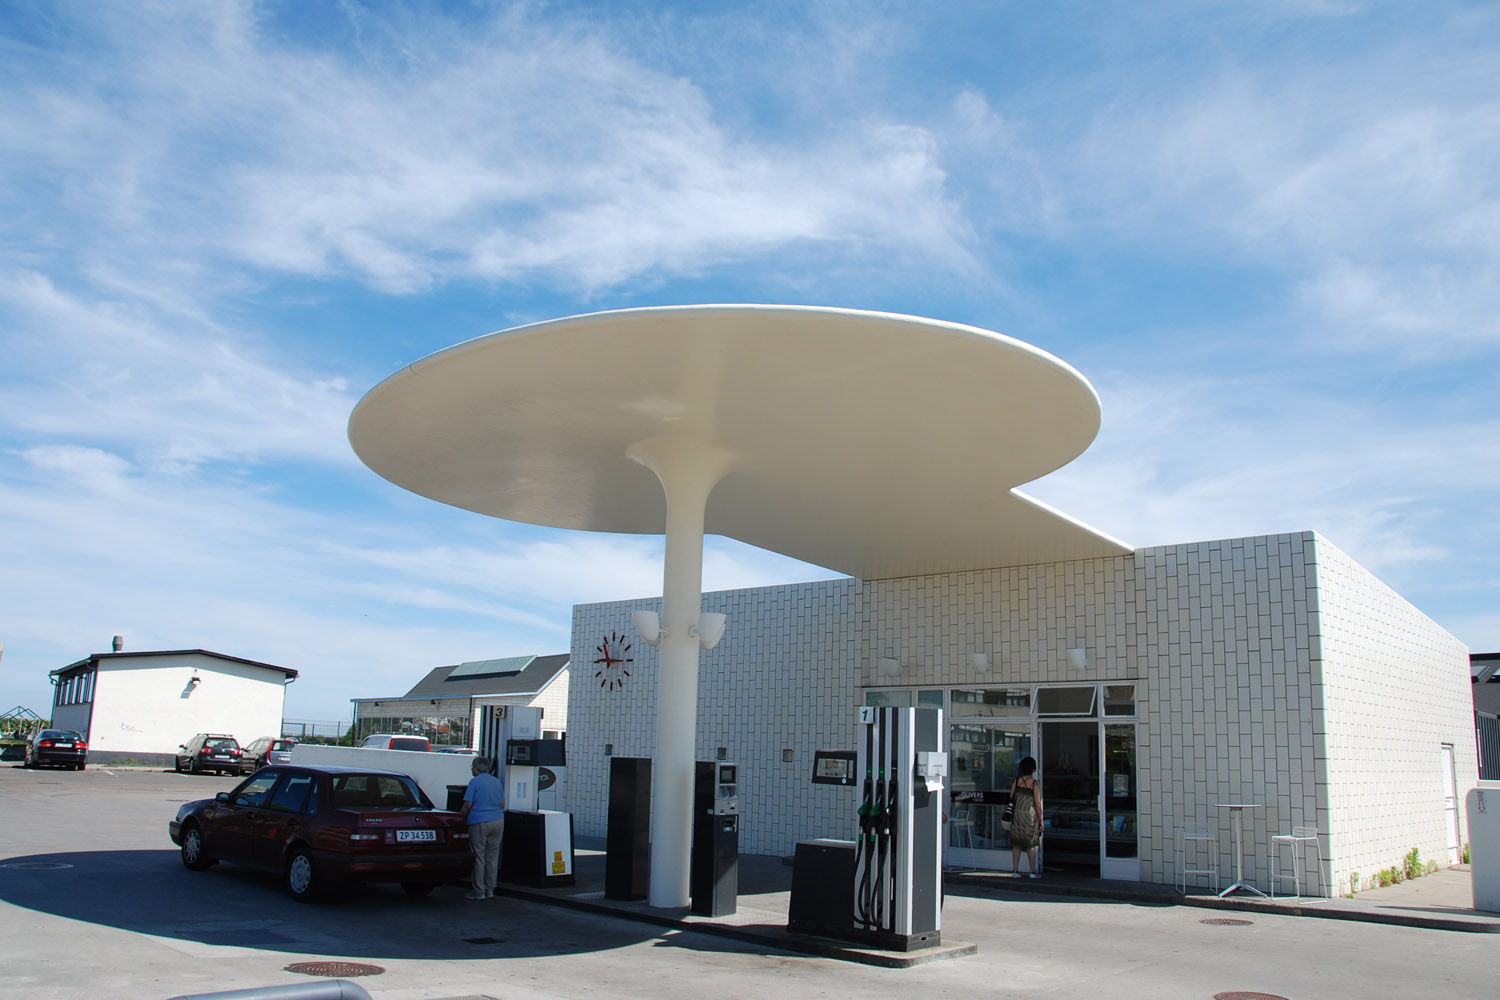 Bellavista 以南的油站，又有「蘑菇」之稱。圖片來源：wikipedia